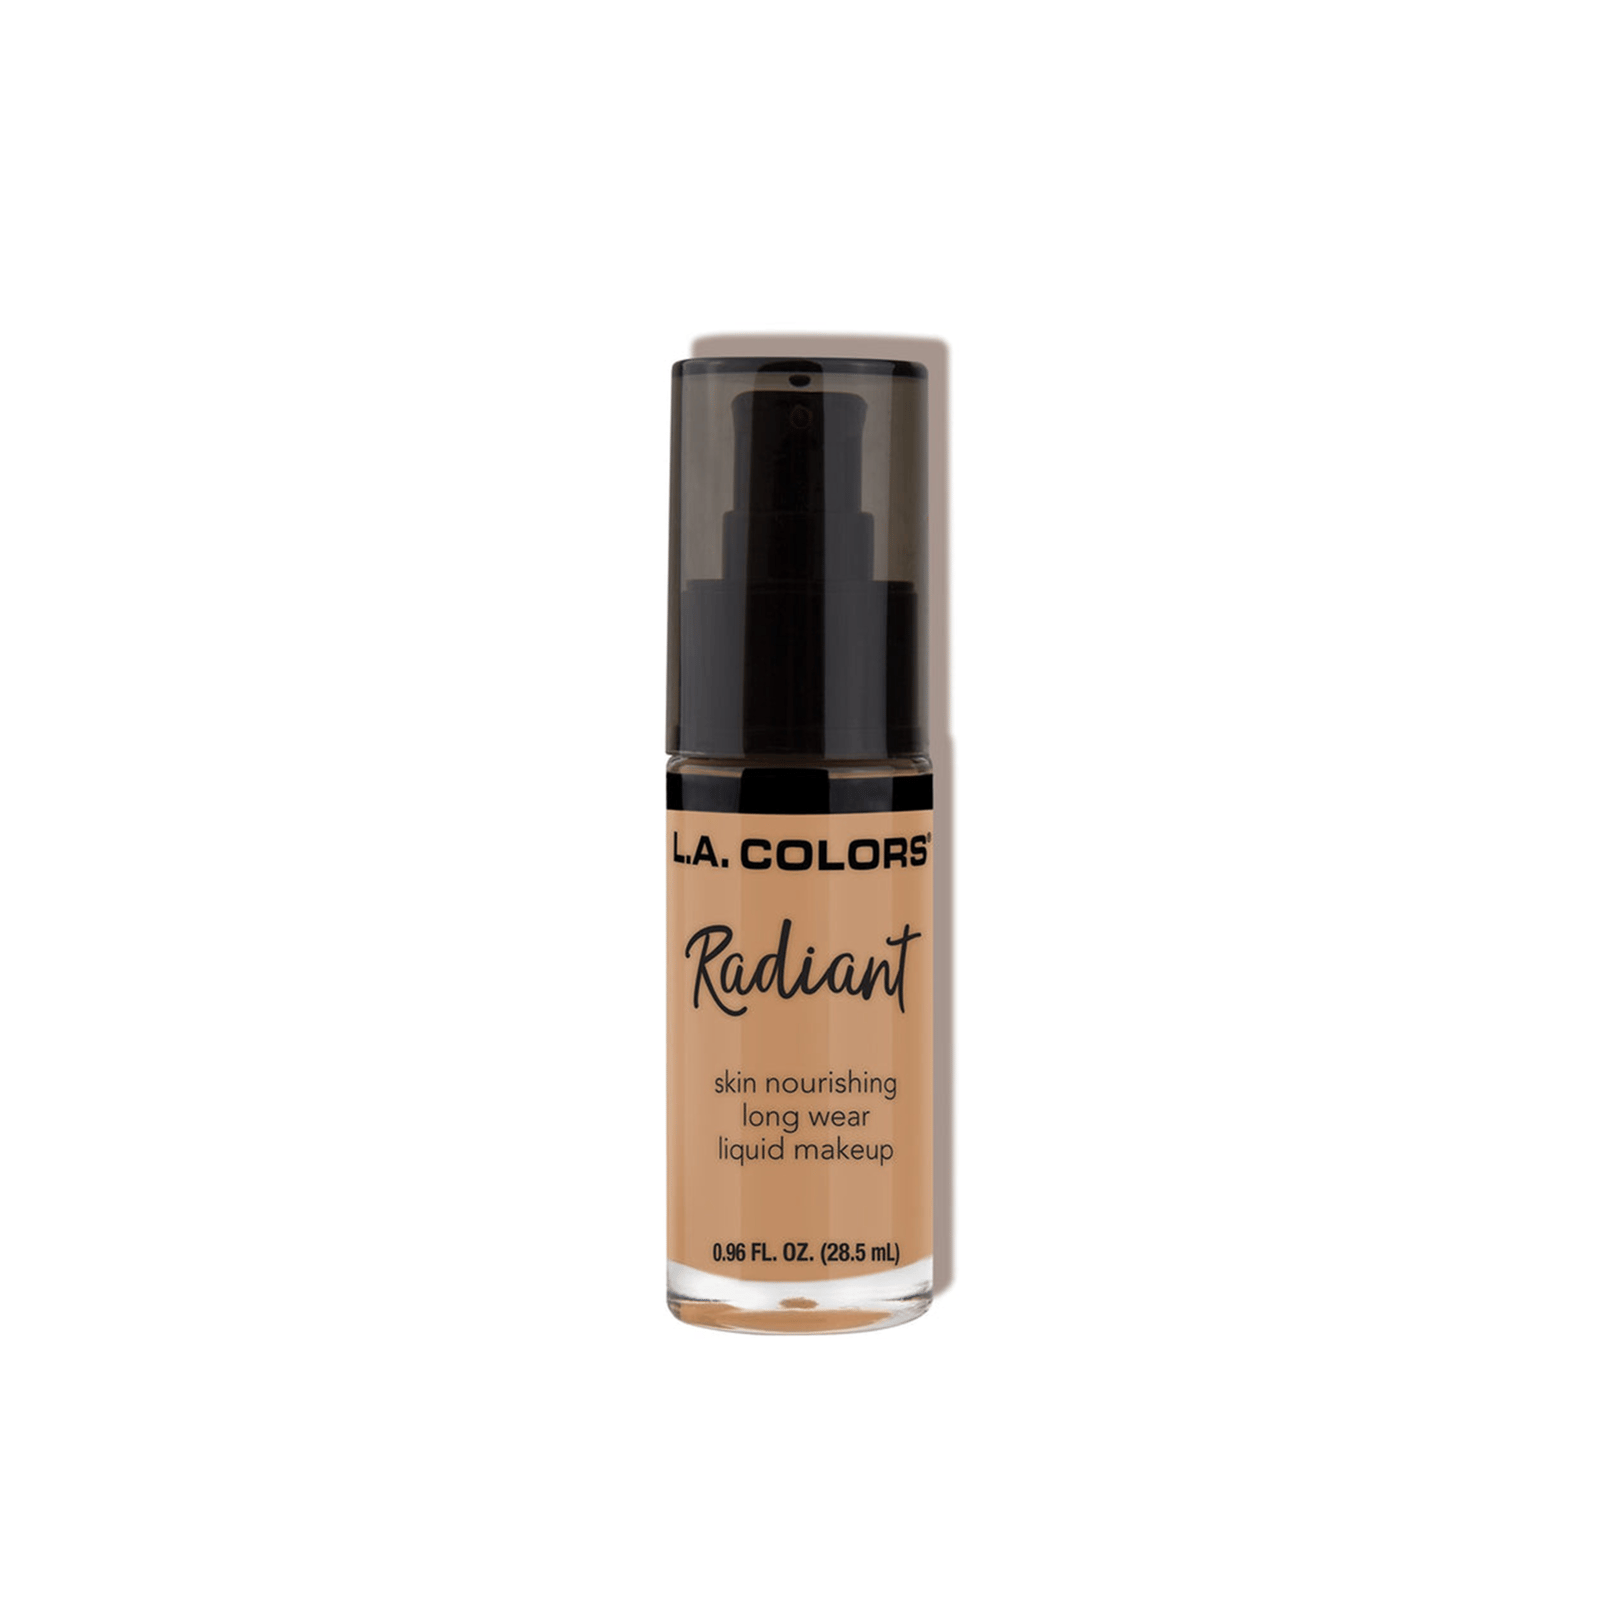 L.A. Colors Radiant Liquid Makeup Foundation CLM391 Suede 28.5ml (0.96 fl oz)